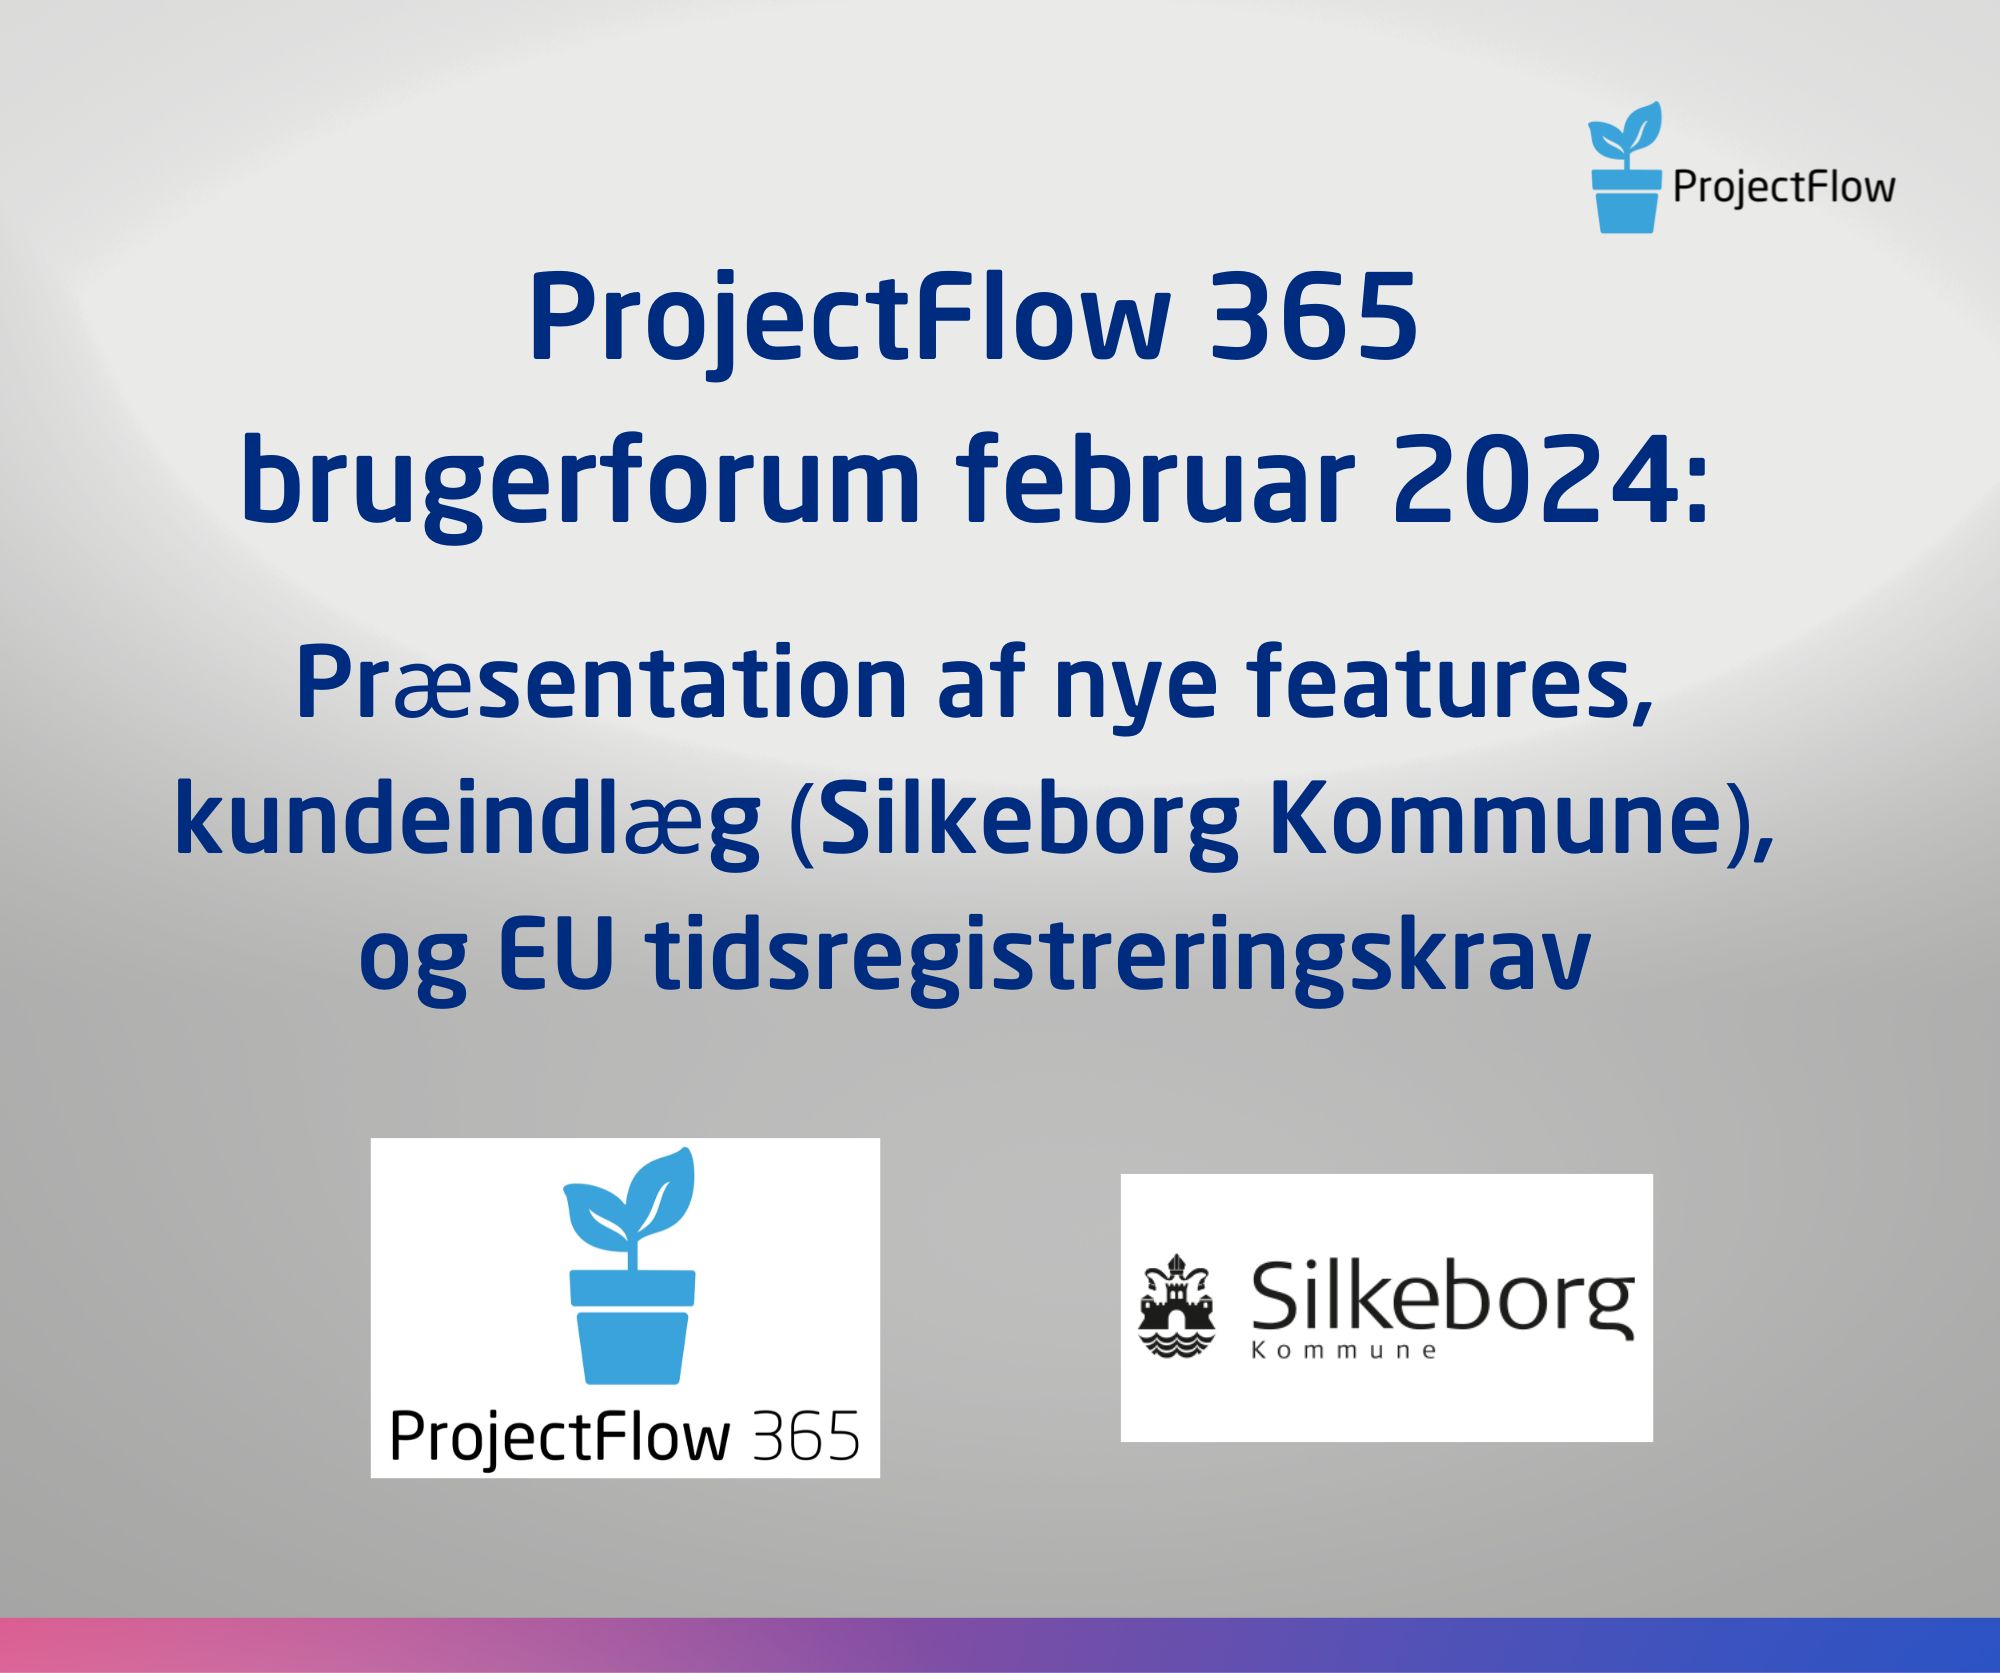 ProjectFlow 365 brugerforum februar 2024: Præsentation af nye features, kundeindlæg (Silkeborg Kommune), og EU tidsregistreringskrav  